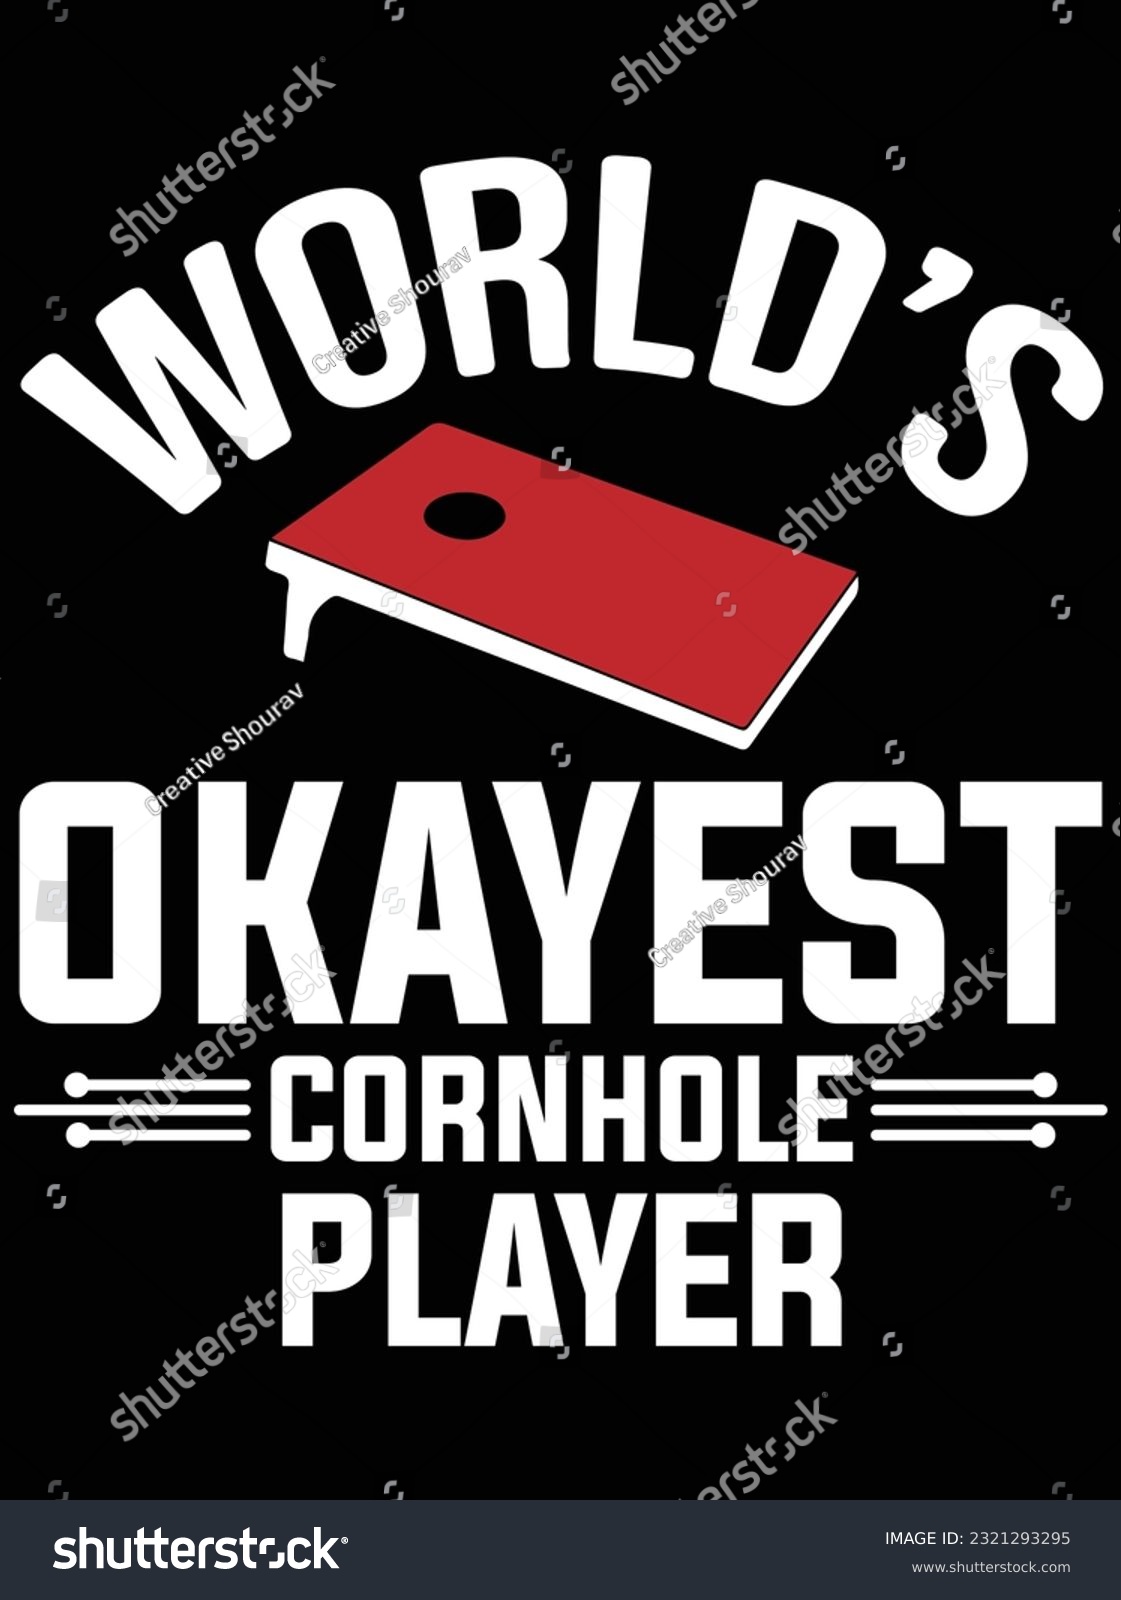 SVG of World's okayest cornhole player design vector art design, eps file. design file for t-shirt. SVG, EPS cuttable design file svg